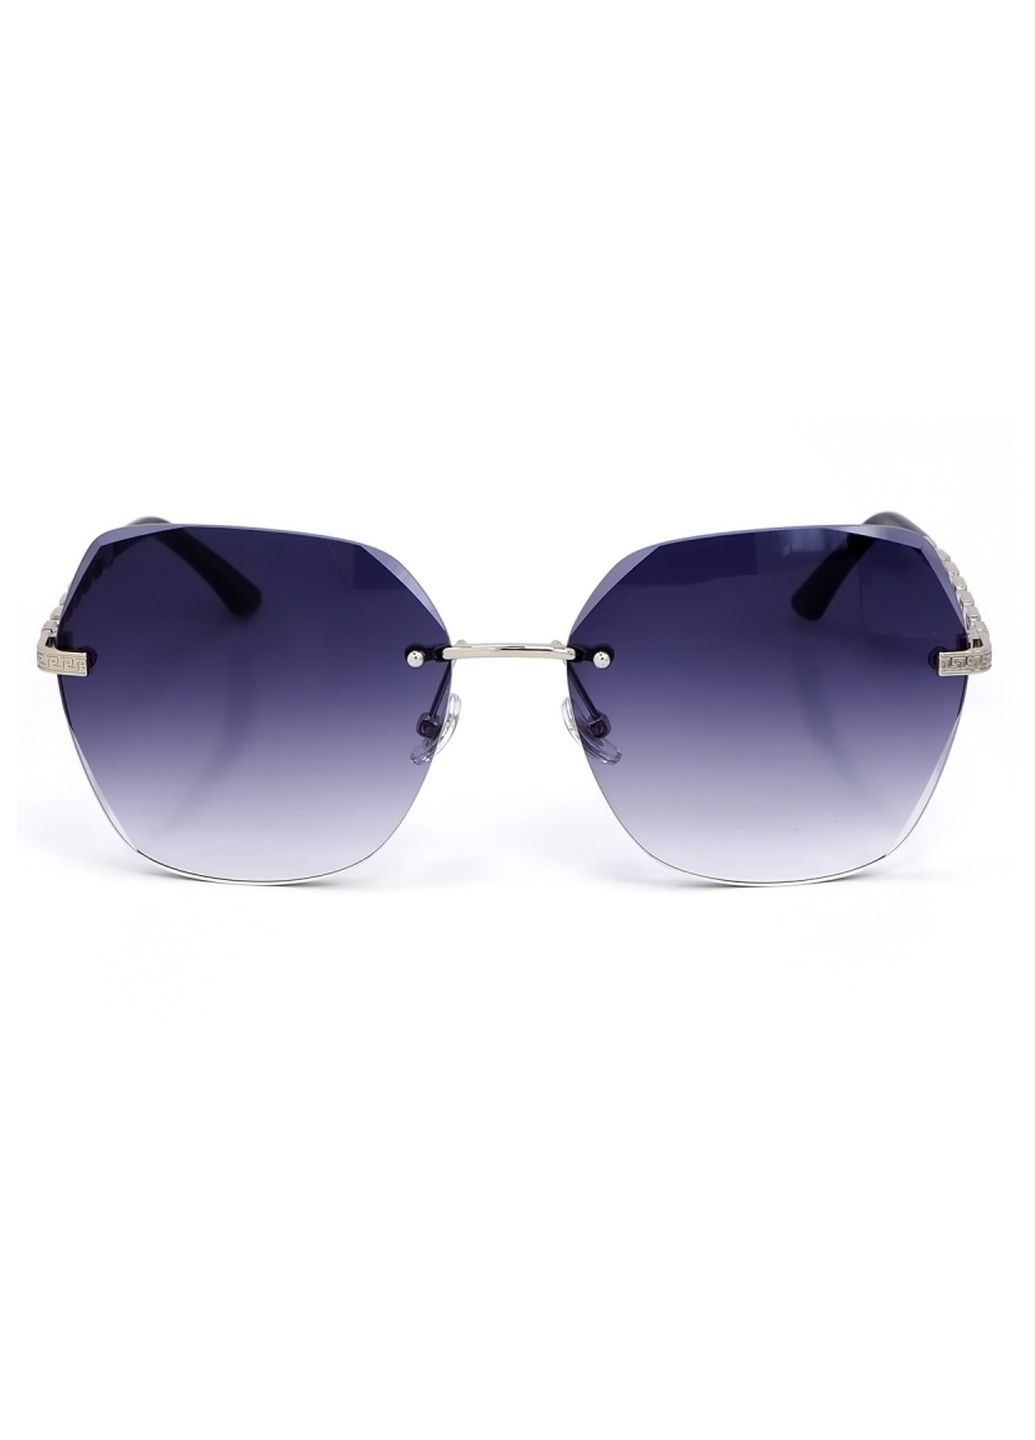 Купить Женские солнцезащитные очки Merlini с поляризацией S31831 117086 - Серый в интернет-магазине